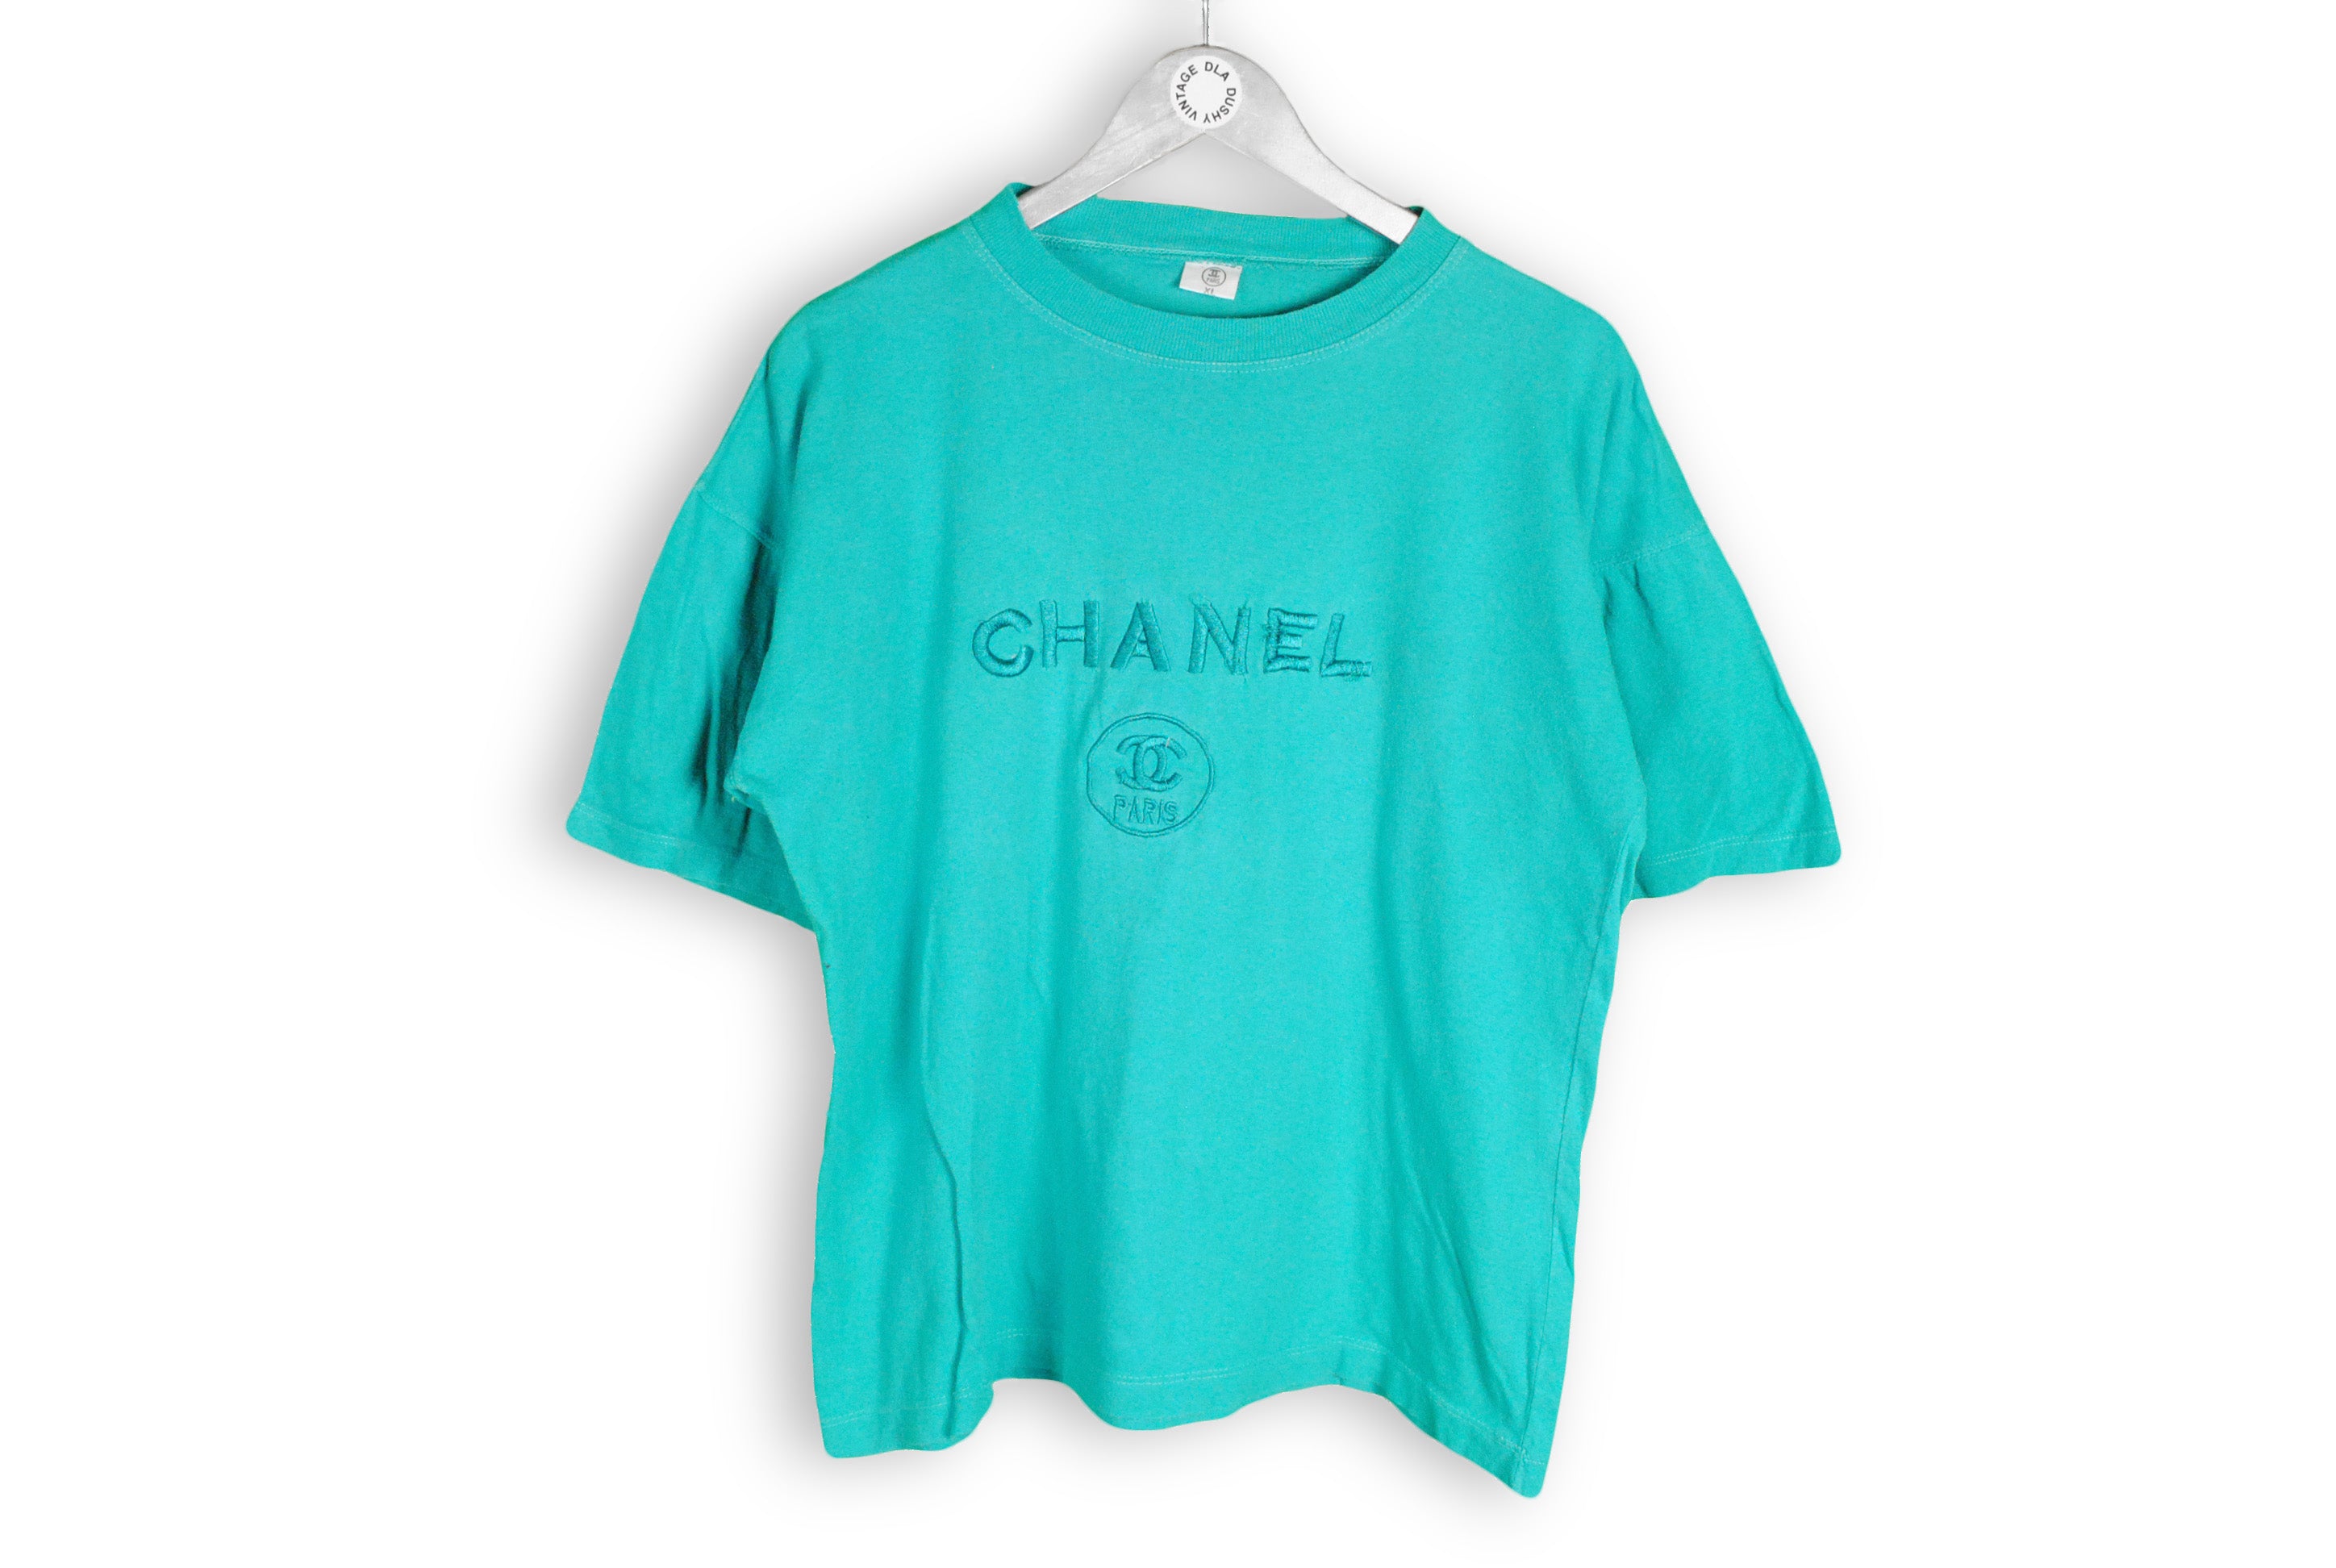 Vintage Butterfly Logo Chanel Supreme T Shirt Women, Supreme T